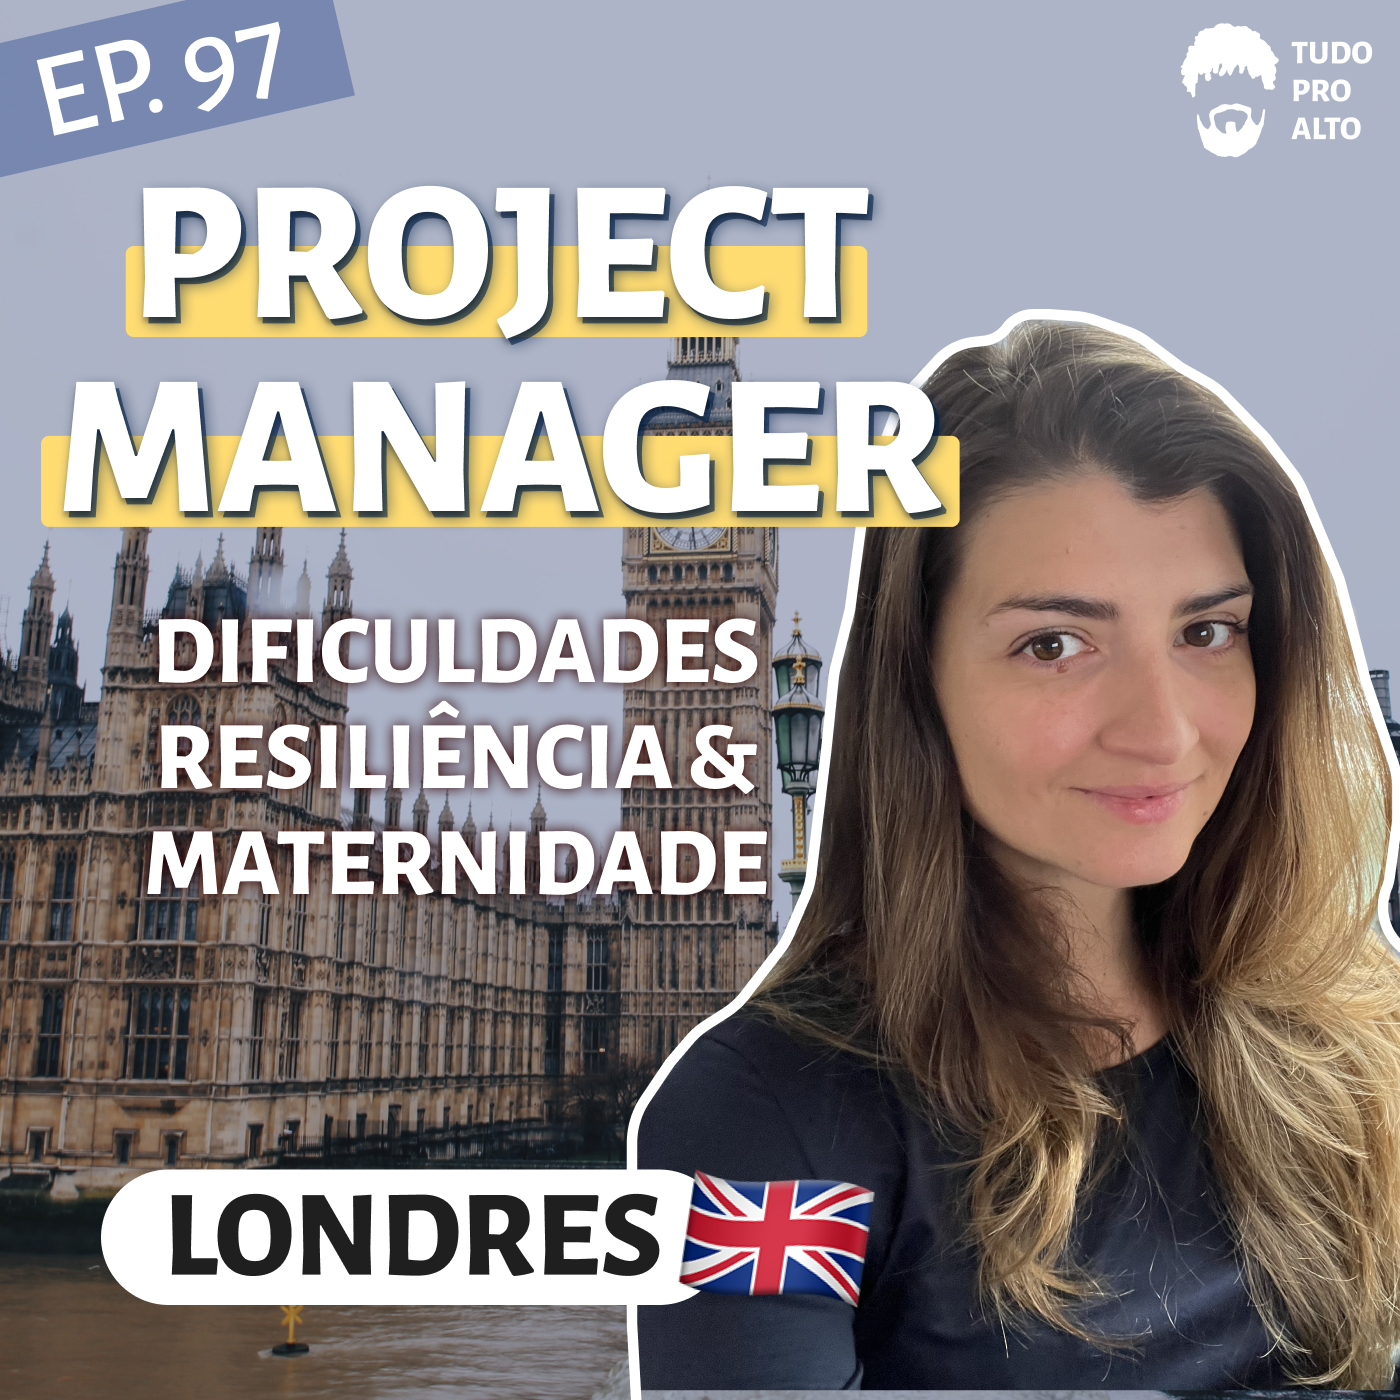 Project Manager em Londres, Inglaterra, com Ana O’Sullivan - Mudanças, Resiliência, e Filhos #97